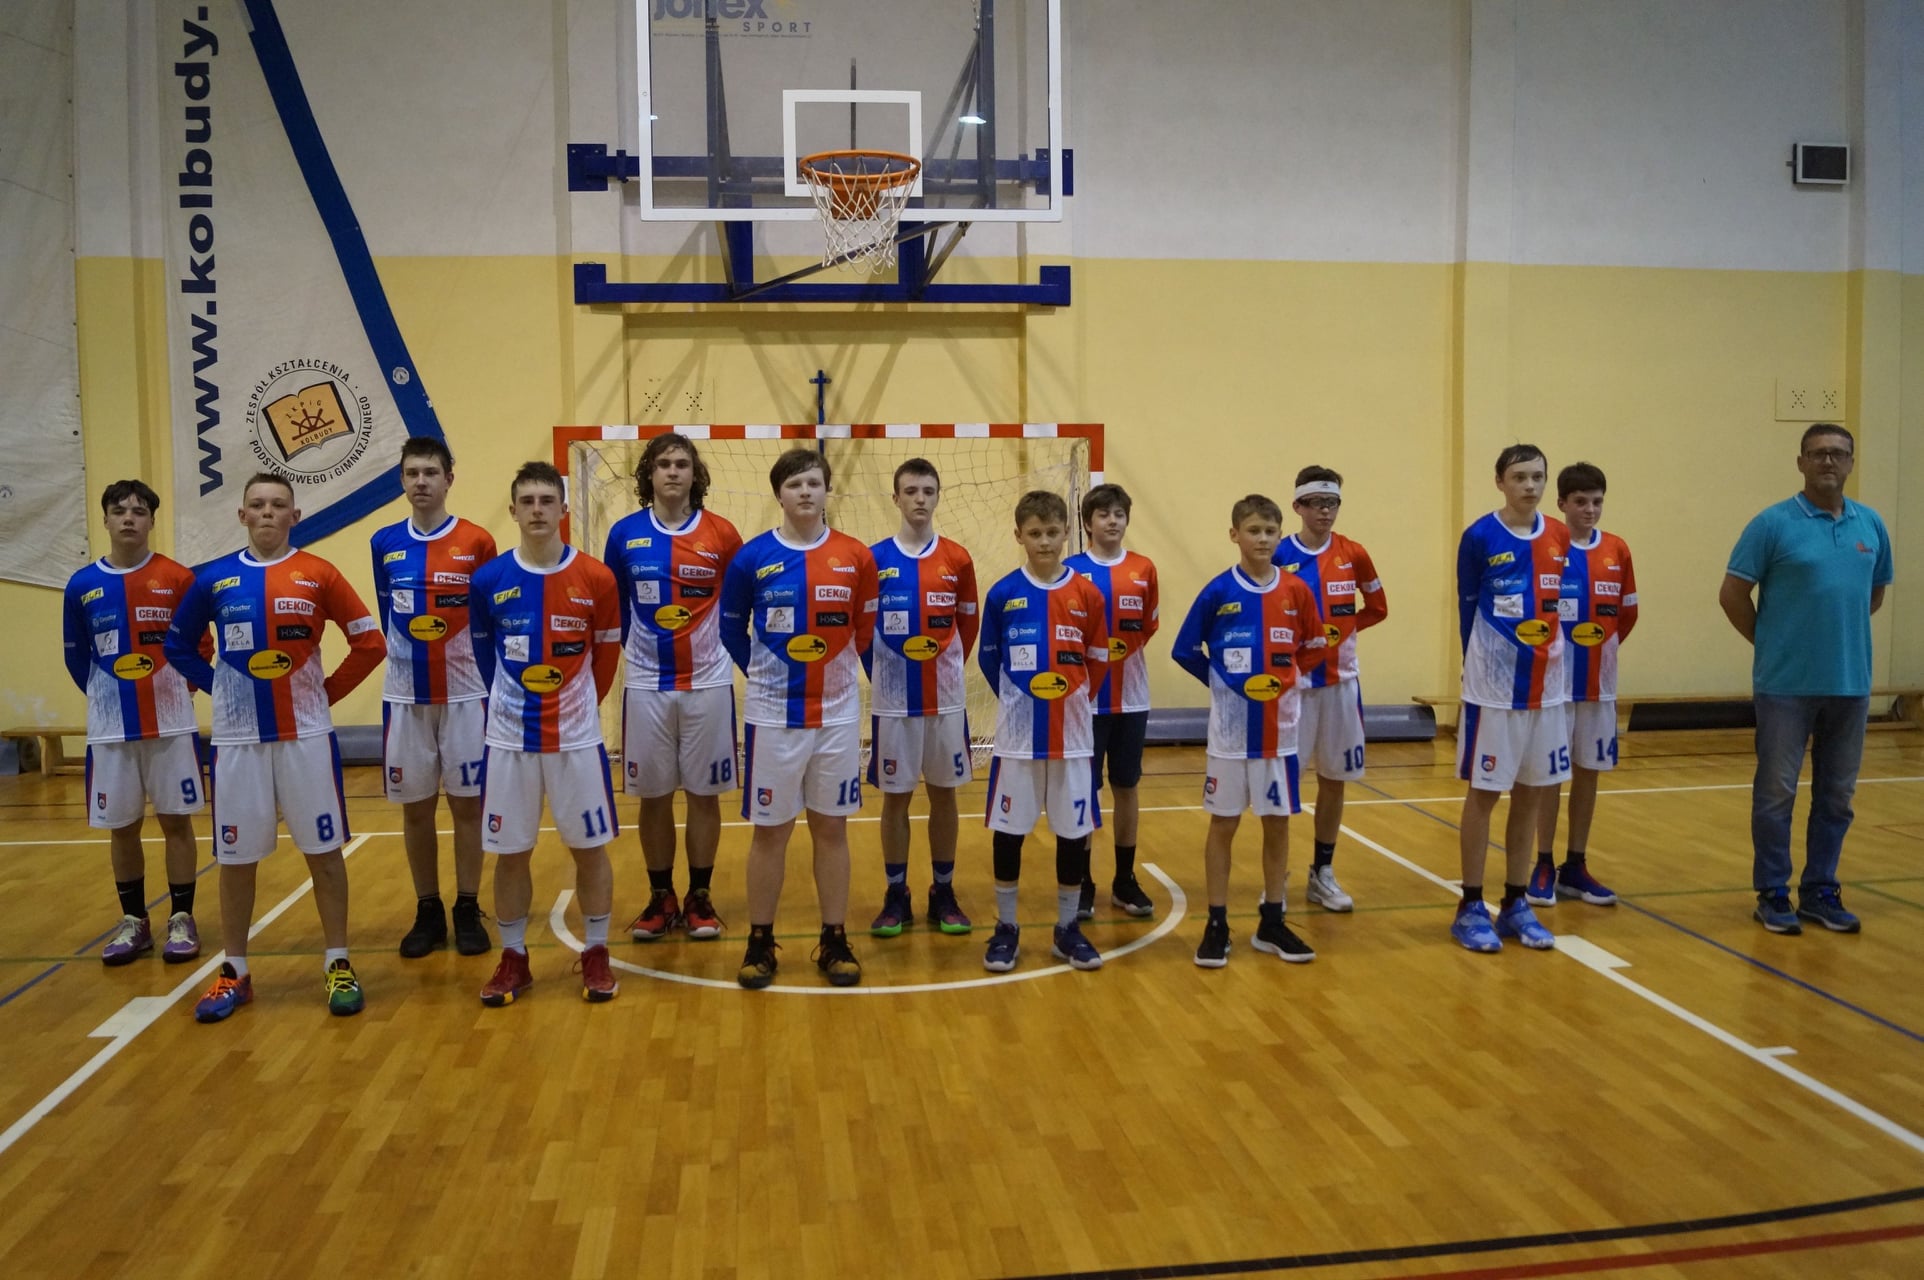 Grywit jest jednym ze sponsorów lokalnej młodzieżowej drużyny koszykarskiej Bryza Kolbudy, bierze udział także w inicjatywach organizowanych przez lokalne placówki dla dzieci m.in. w Przedszkolu nr 35 w Gdańsku.